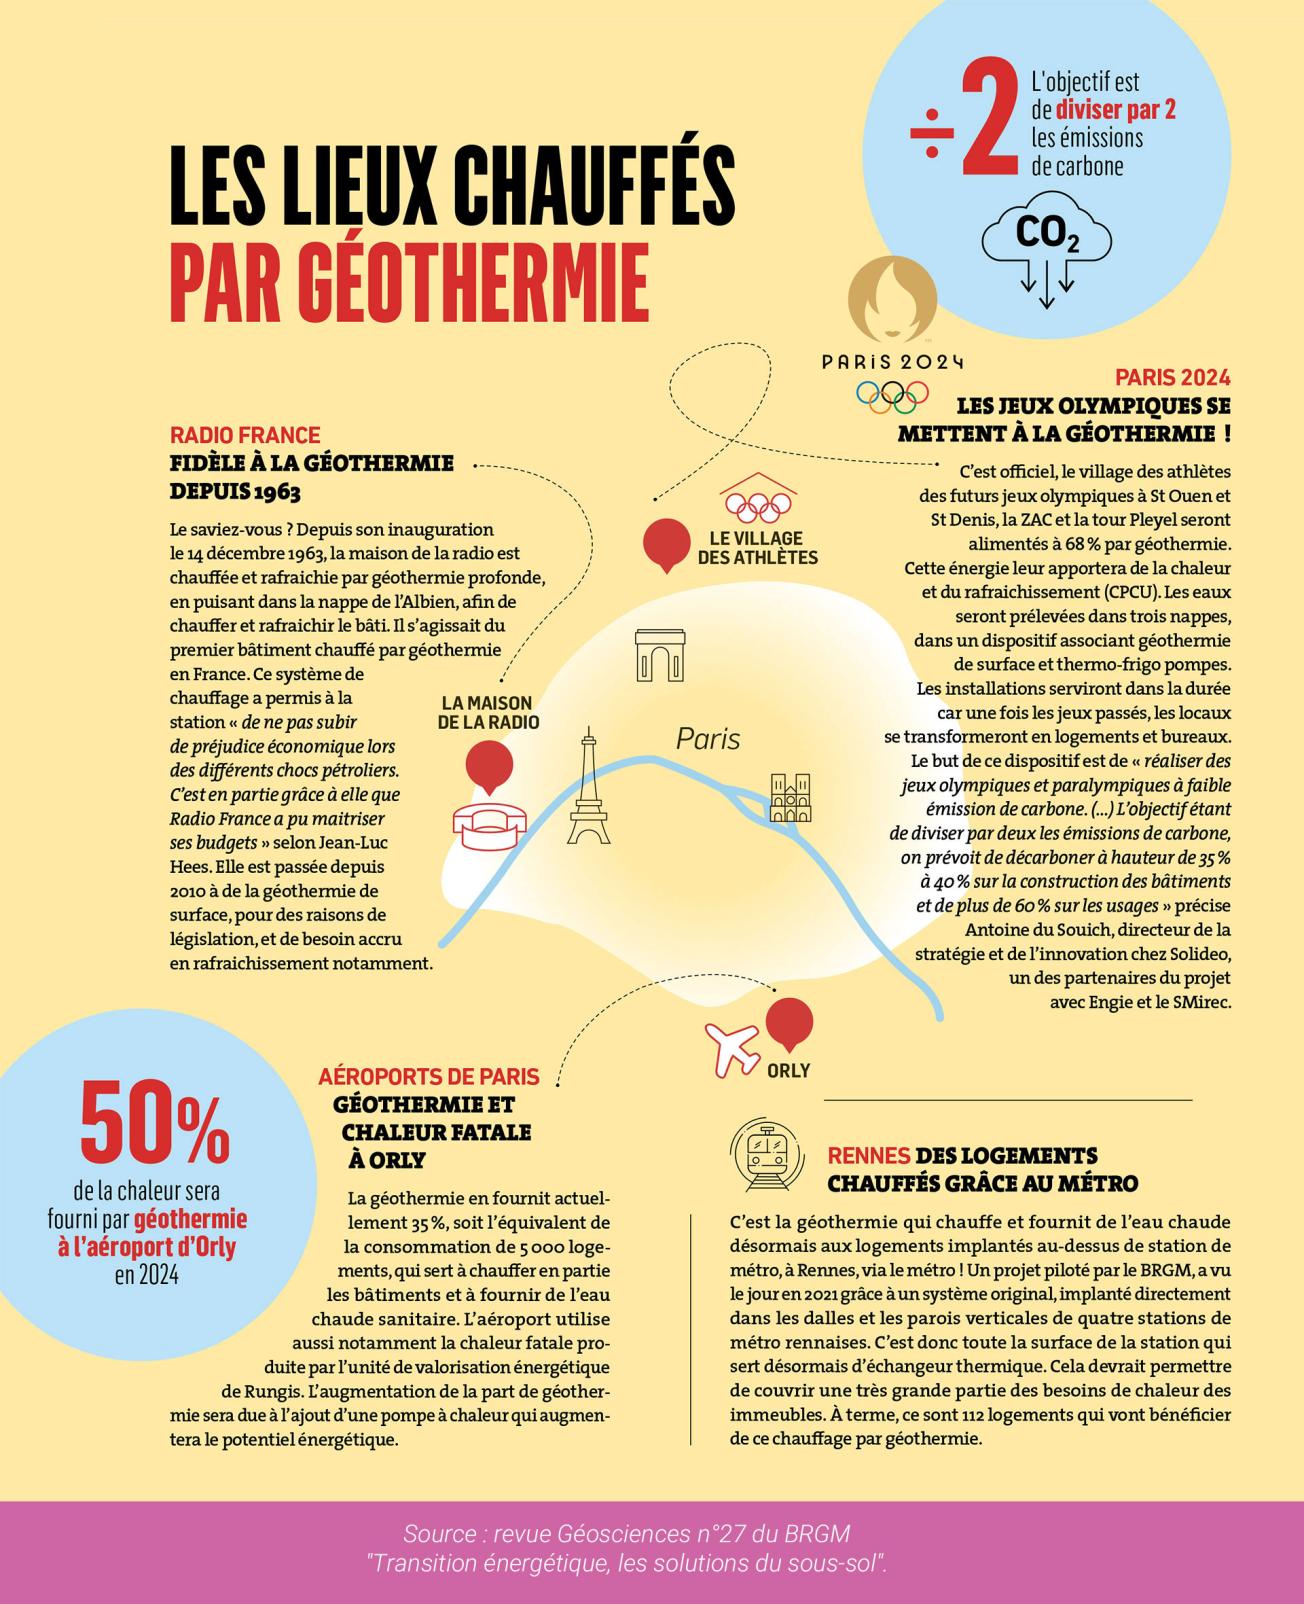 Infographie "Les lieux chauffés par géothermie" issue de la revue Géosciences n°27, parue en septembre 2023.